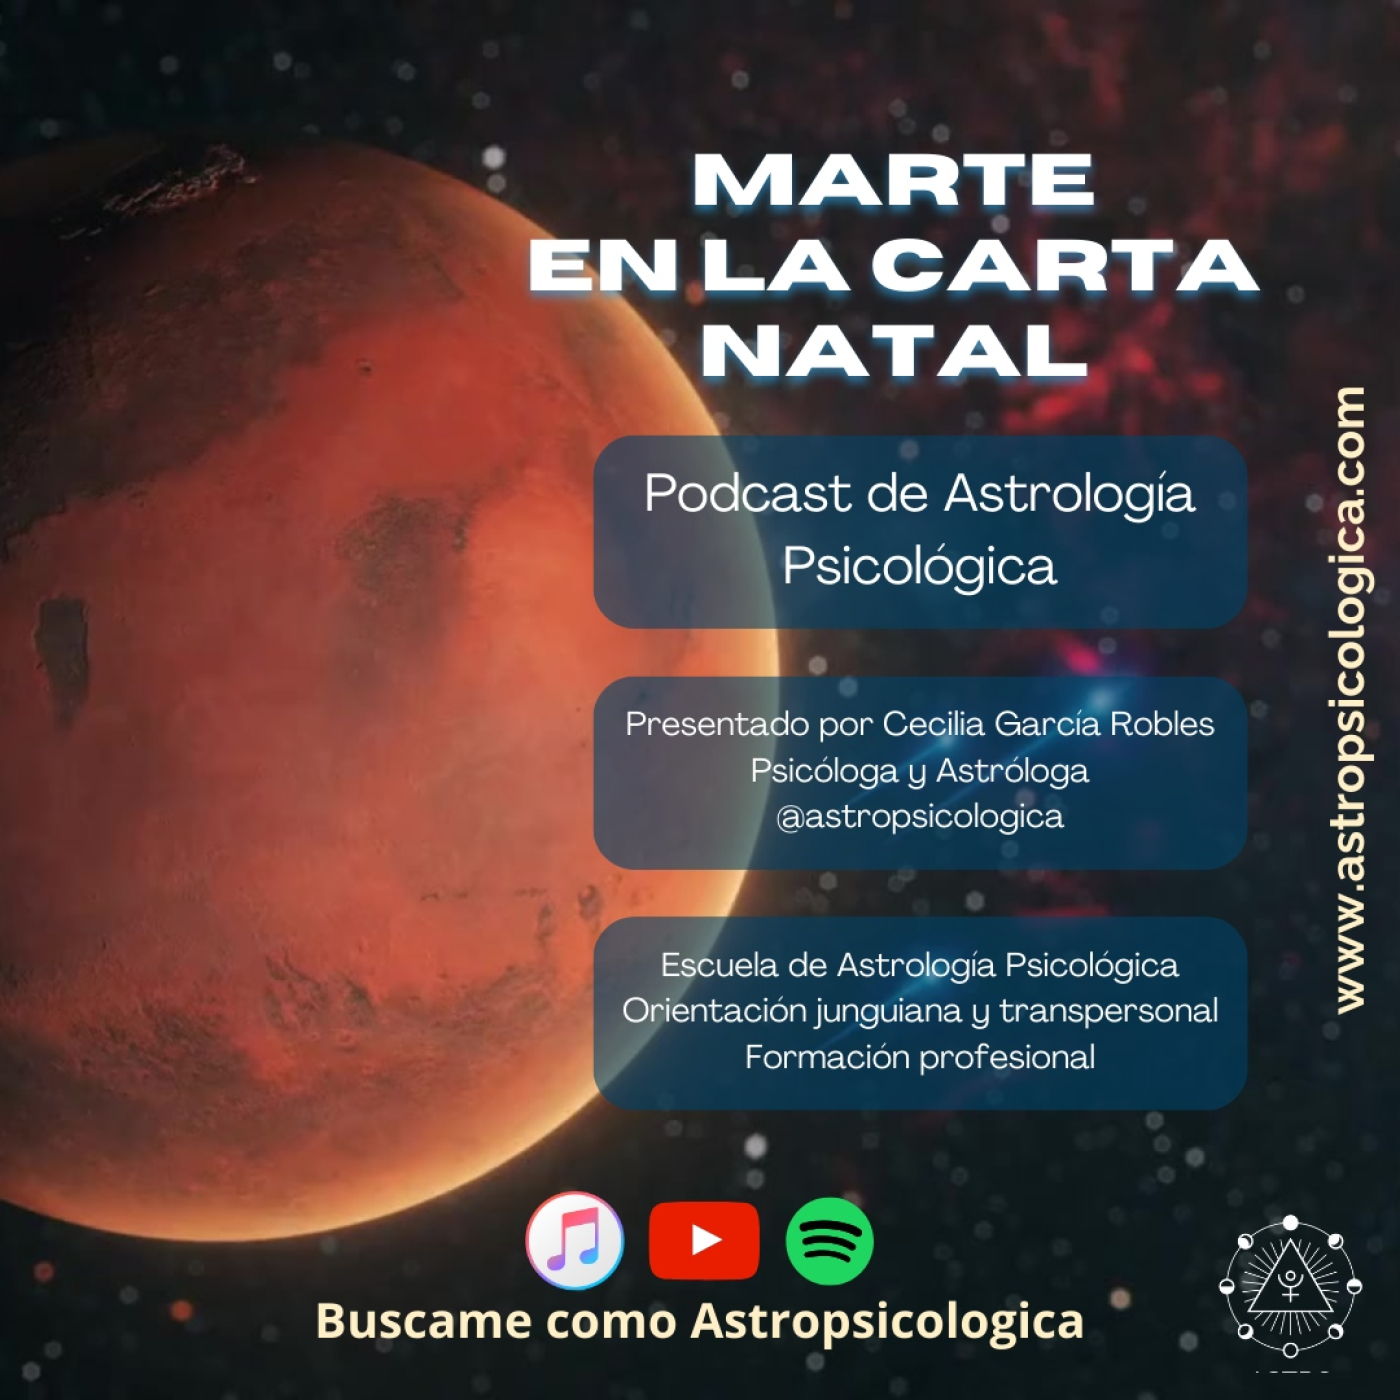 Podcast: Marte en la carta natal